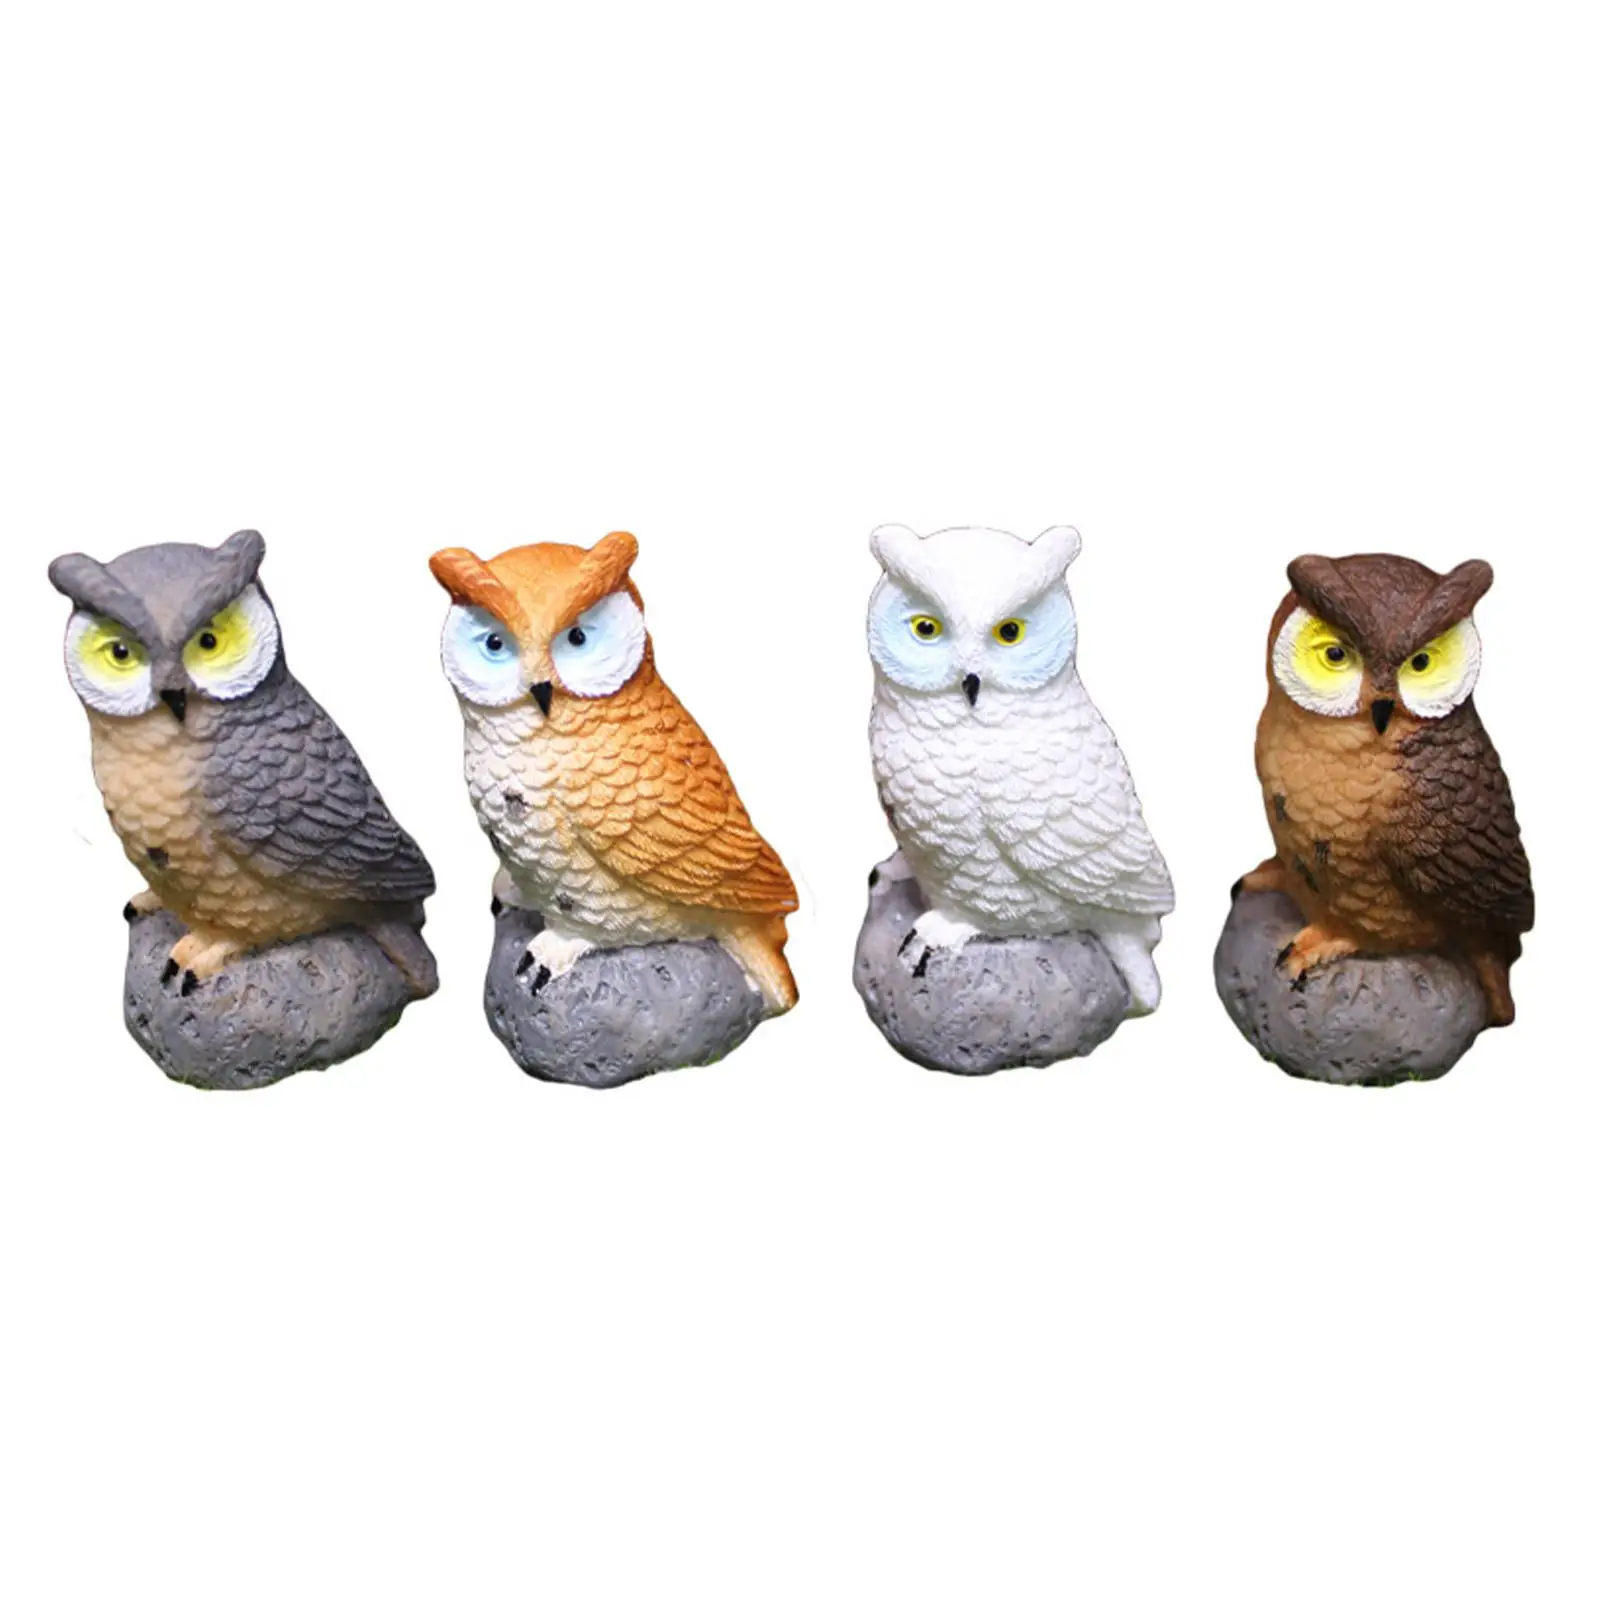 4x Смоляные миниатюрные фигурки птиц и миниатюрных сов для декора бонсай3